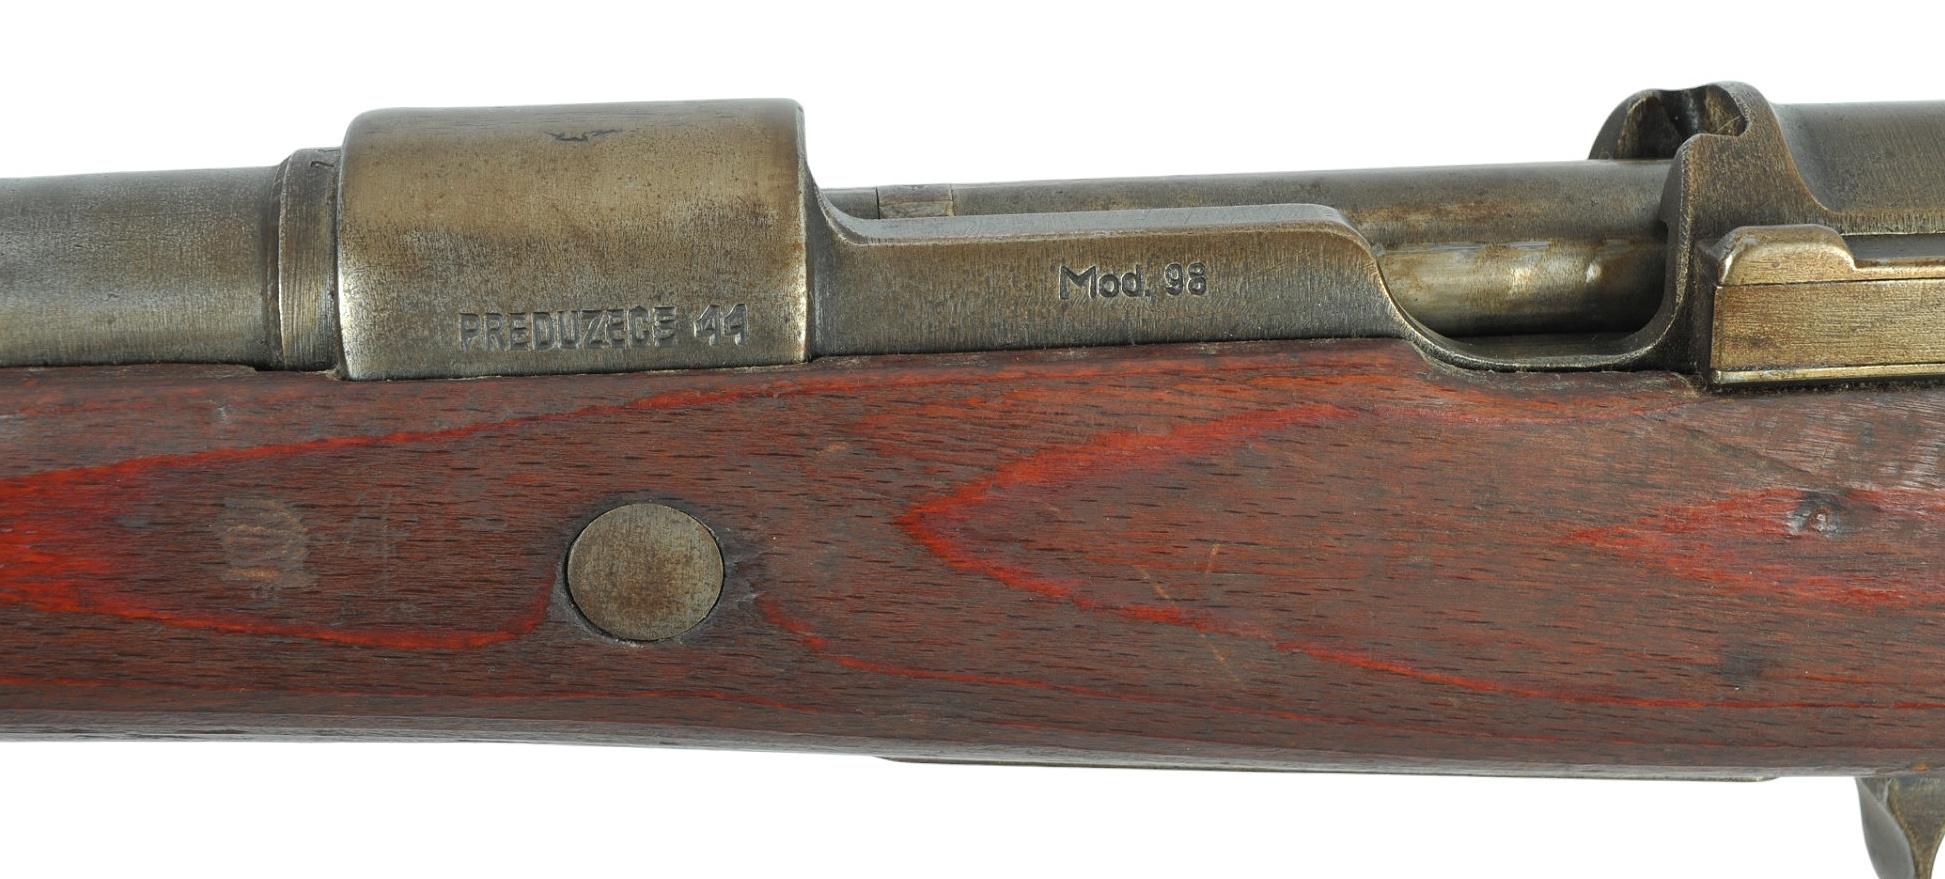 World War II German Yugoslavian Military M98/48 8mm Mauser Bolt-Action Rifle - FFL # B5608 (JRW1)